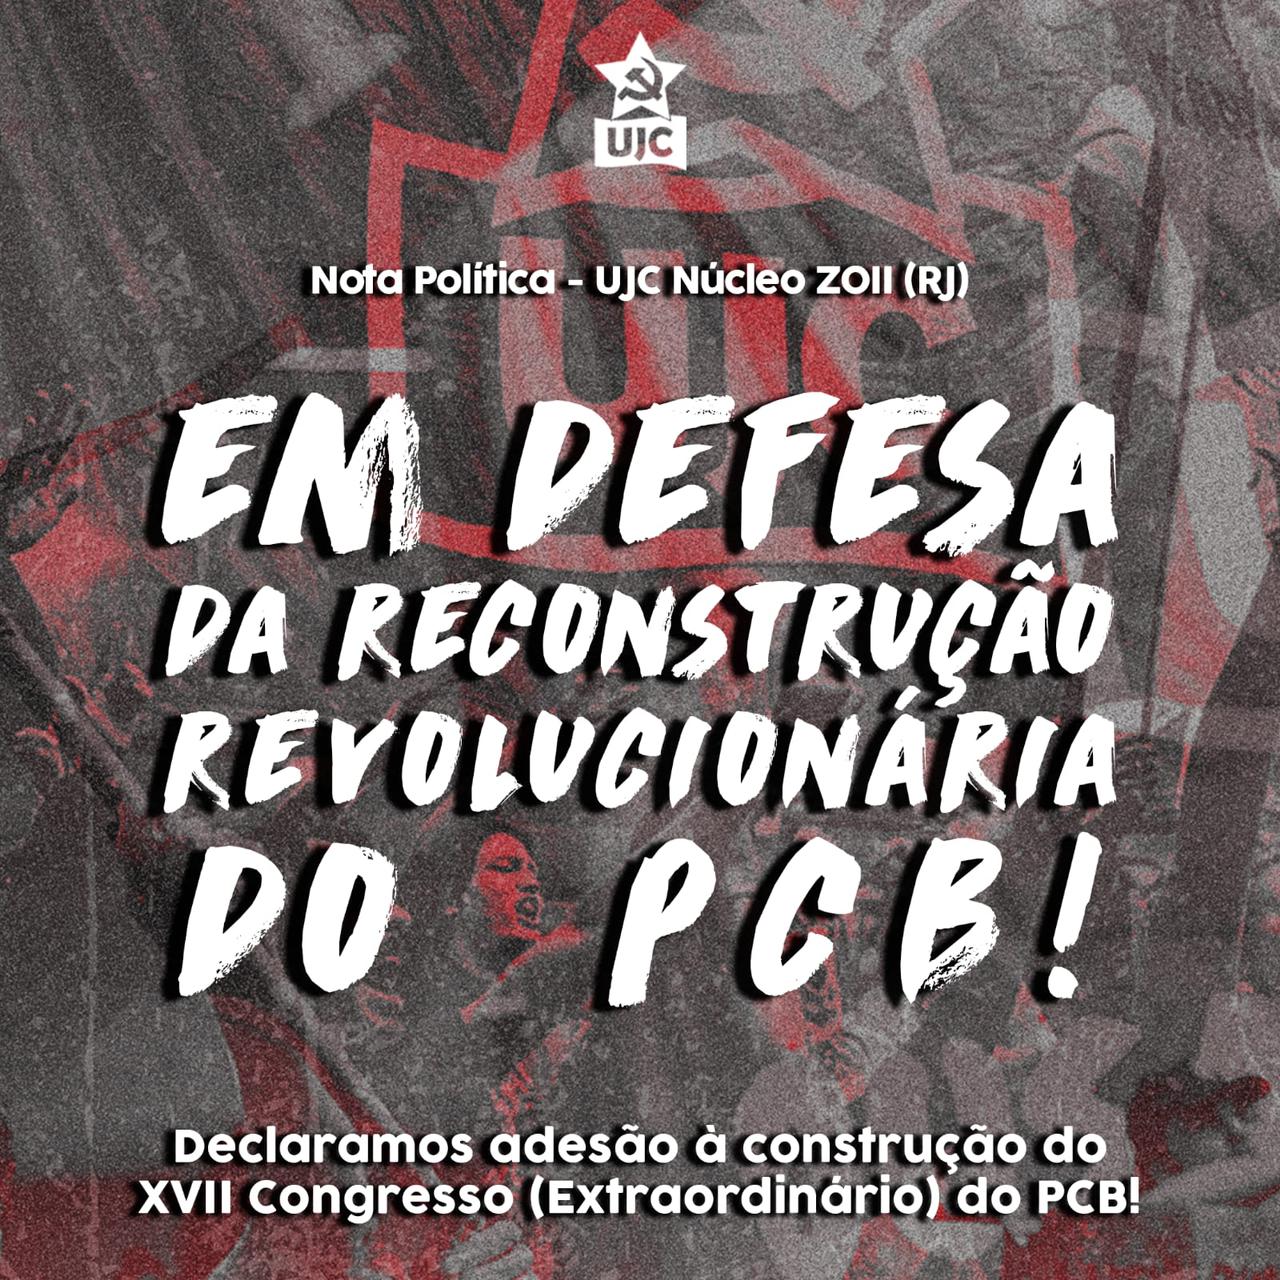 Rio de Janeiro: UJC Zona Oeste II em defesa da Reconstrução Revolucionária do PCB e pelo XVII Congresso Extraordinário!